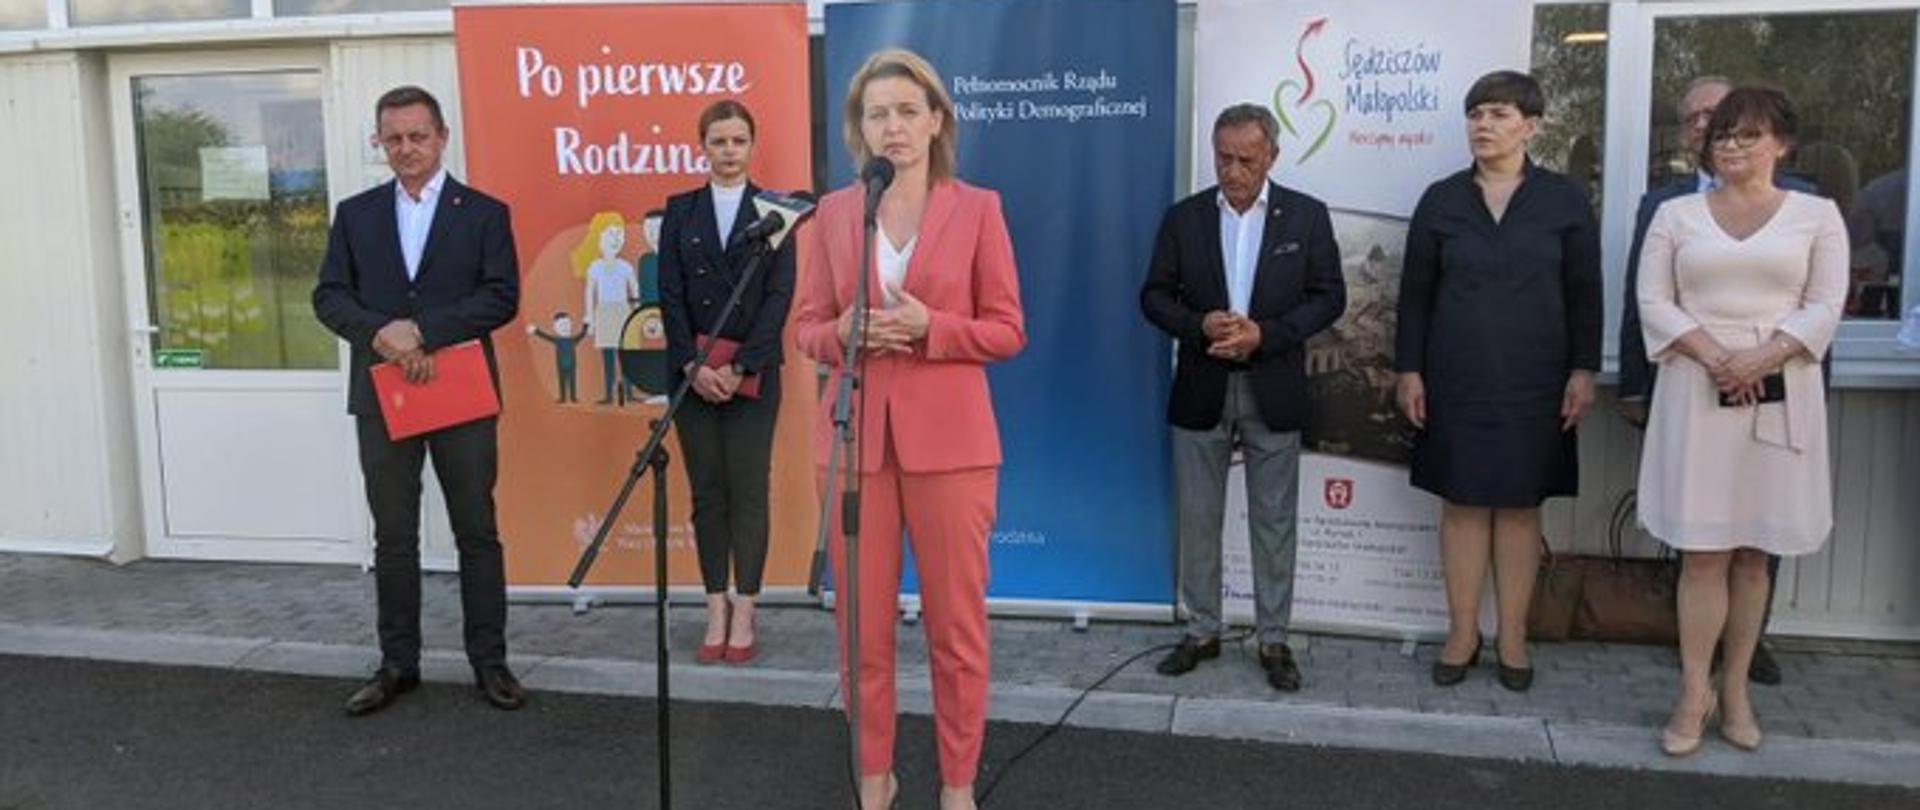 Wiceminister rodziny, pracy i polityki społecznej Barbara Socha odwiedziła z kolei Sędziszów Małopolski